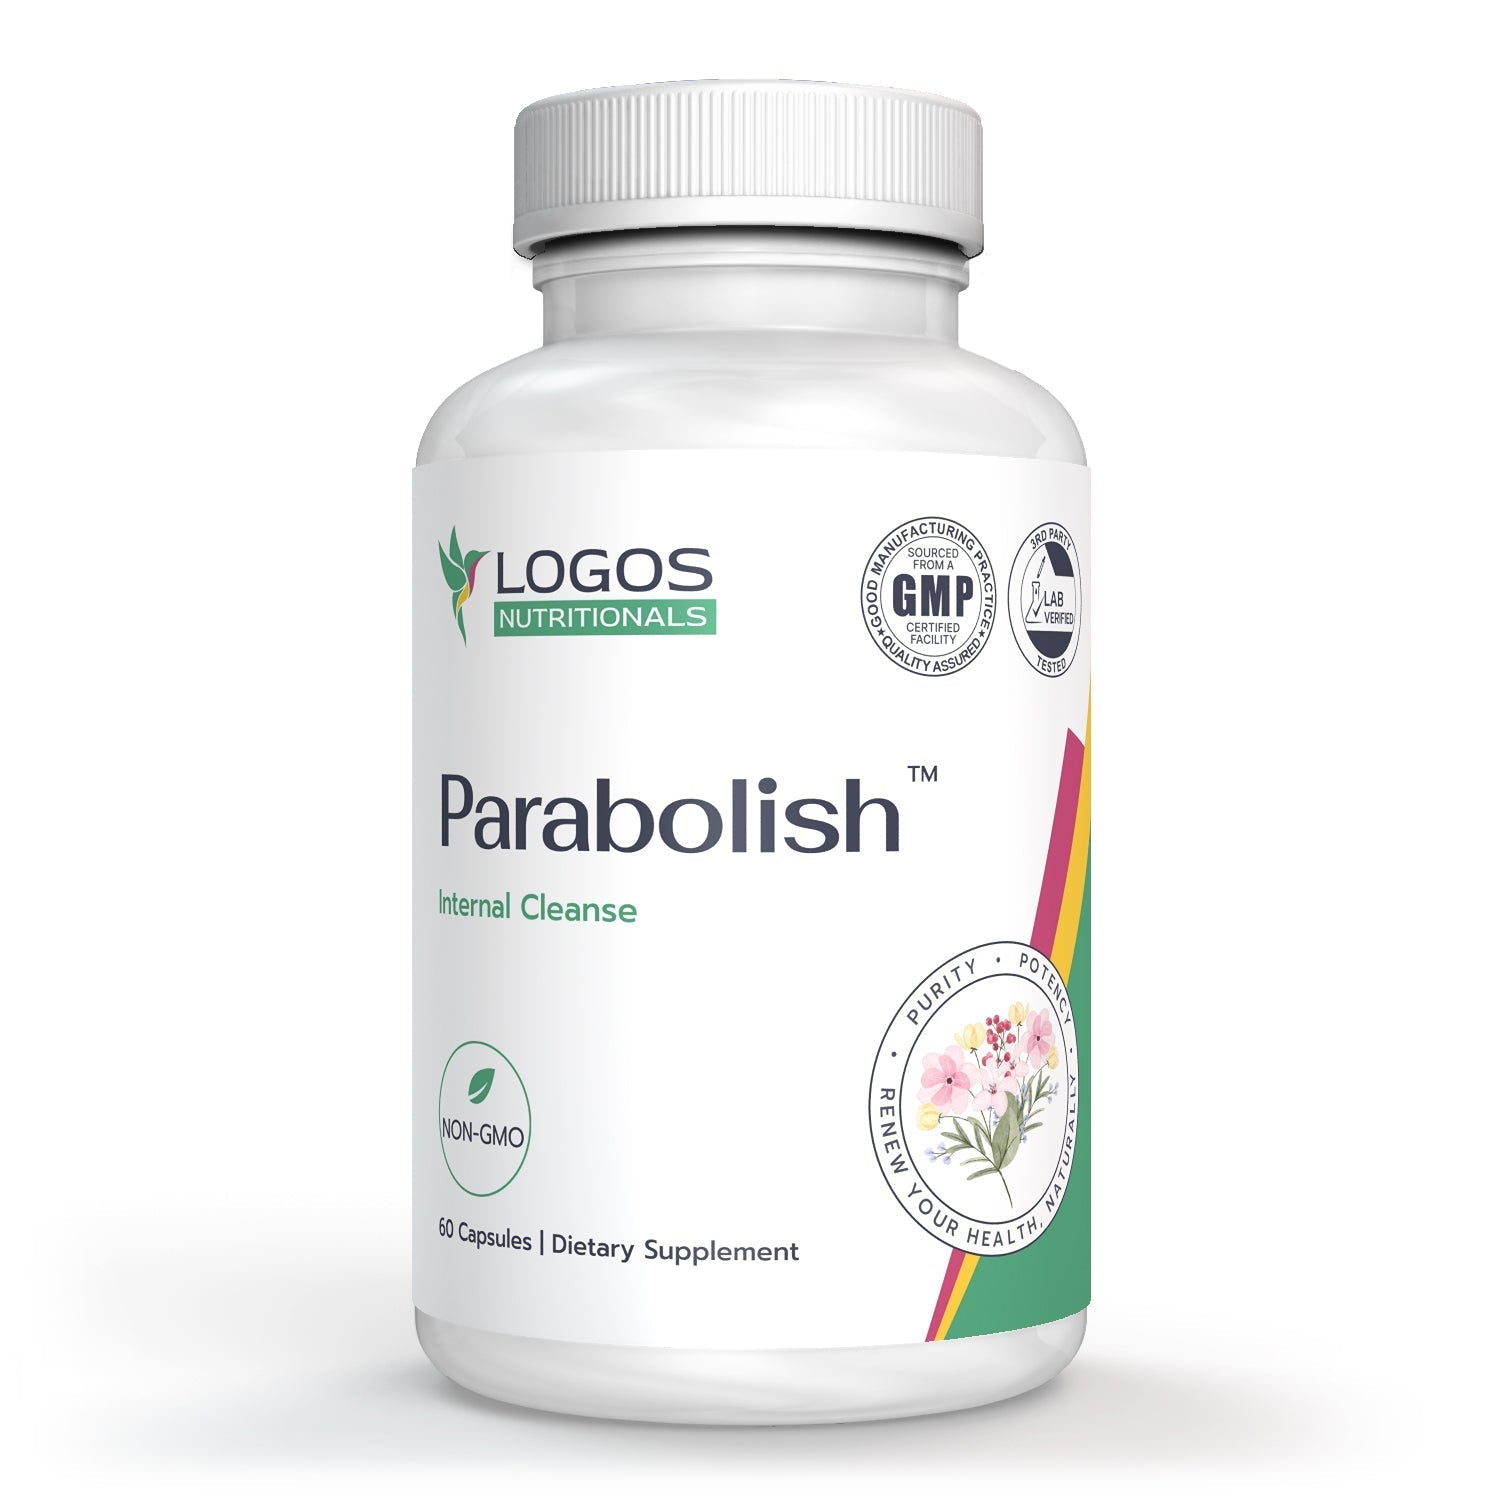 Parabolish™